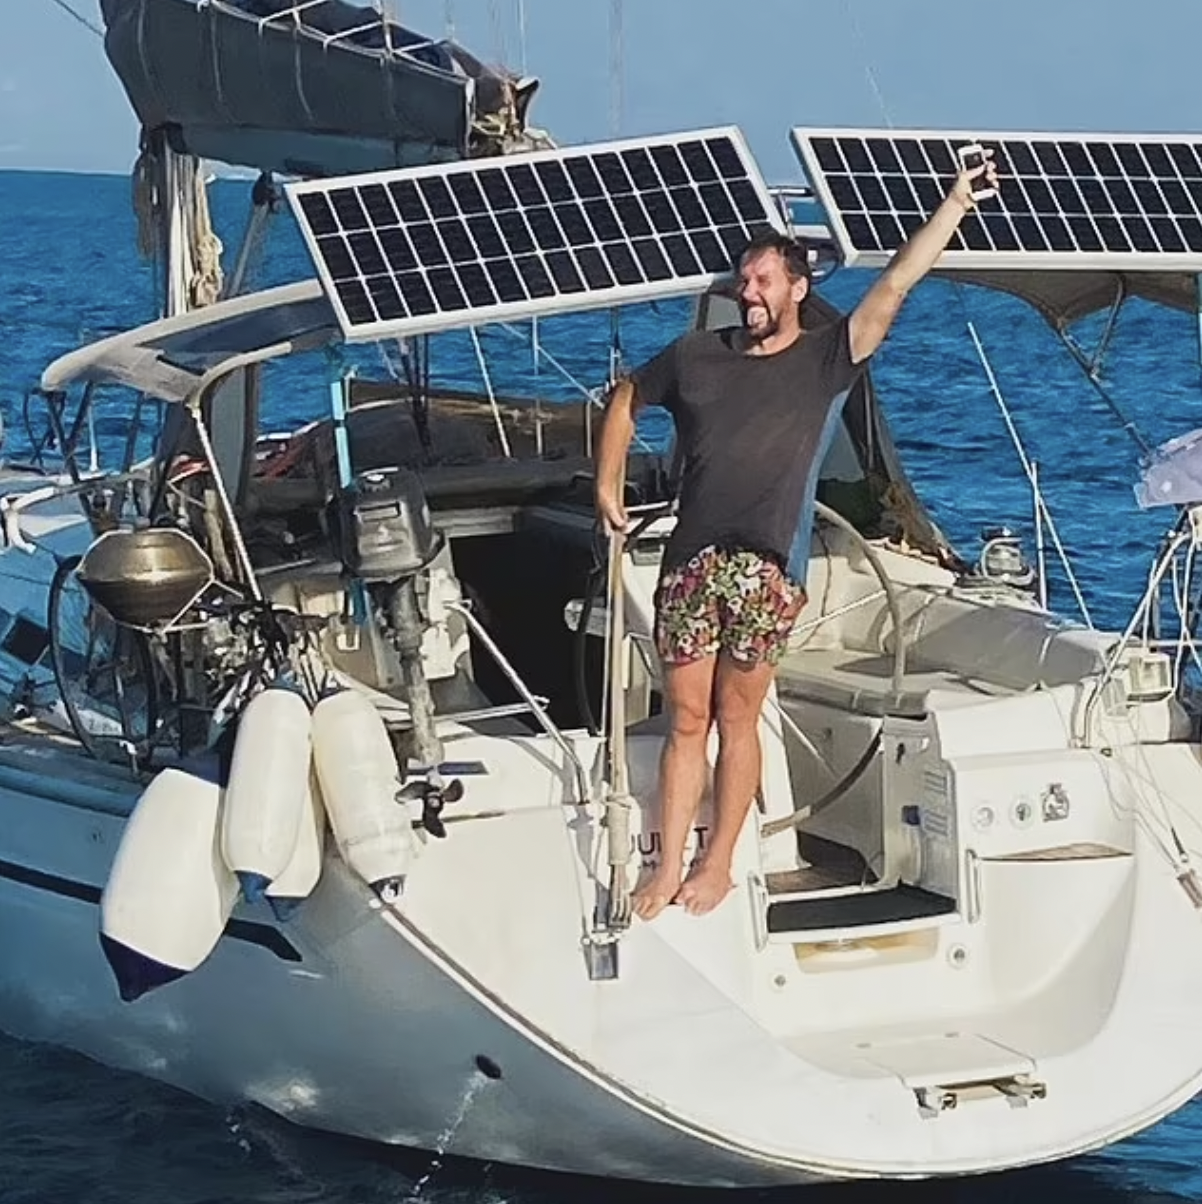 Mann über Bord: Einhandsegler schwimmt 17 km zur Küste – Yacht rammt Felsen  und sinkt